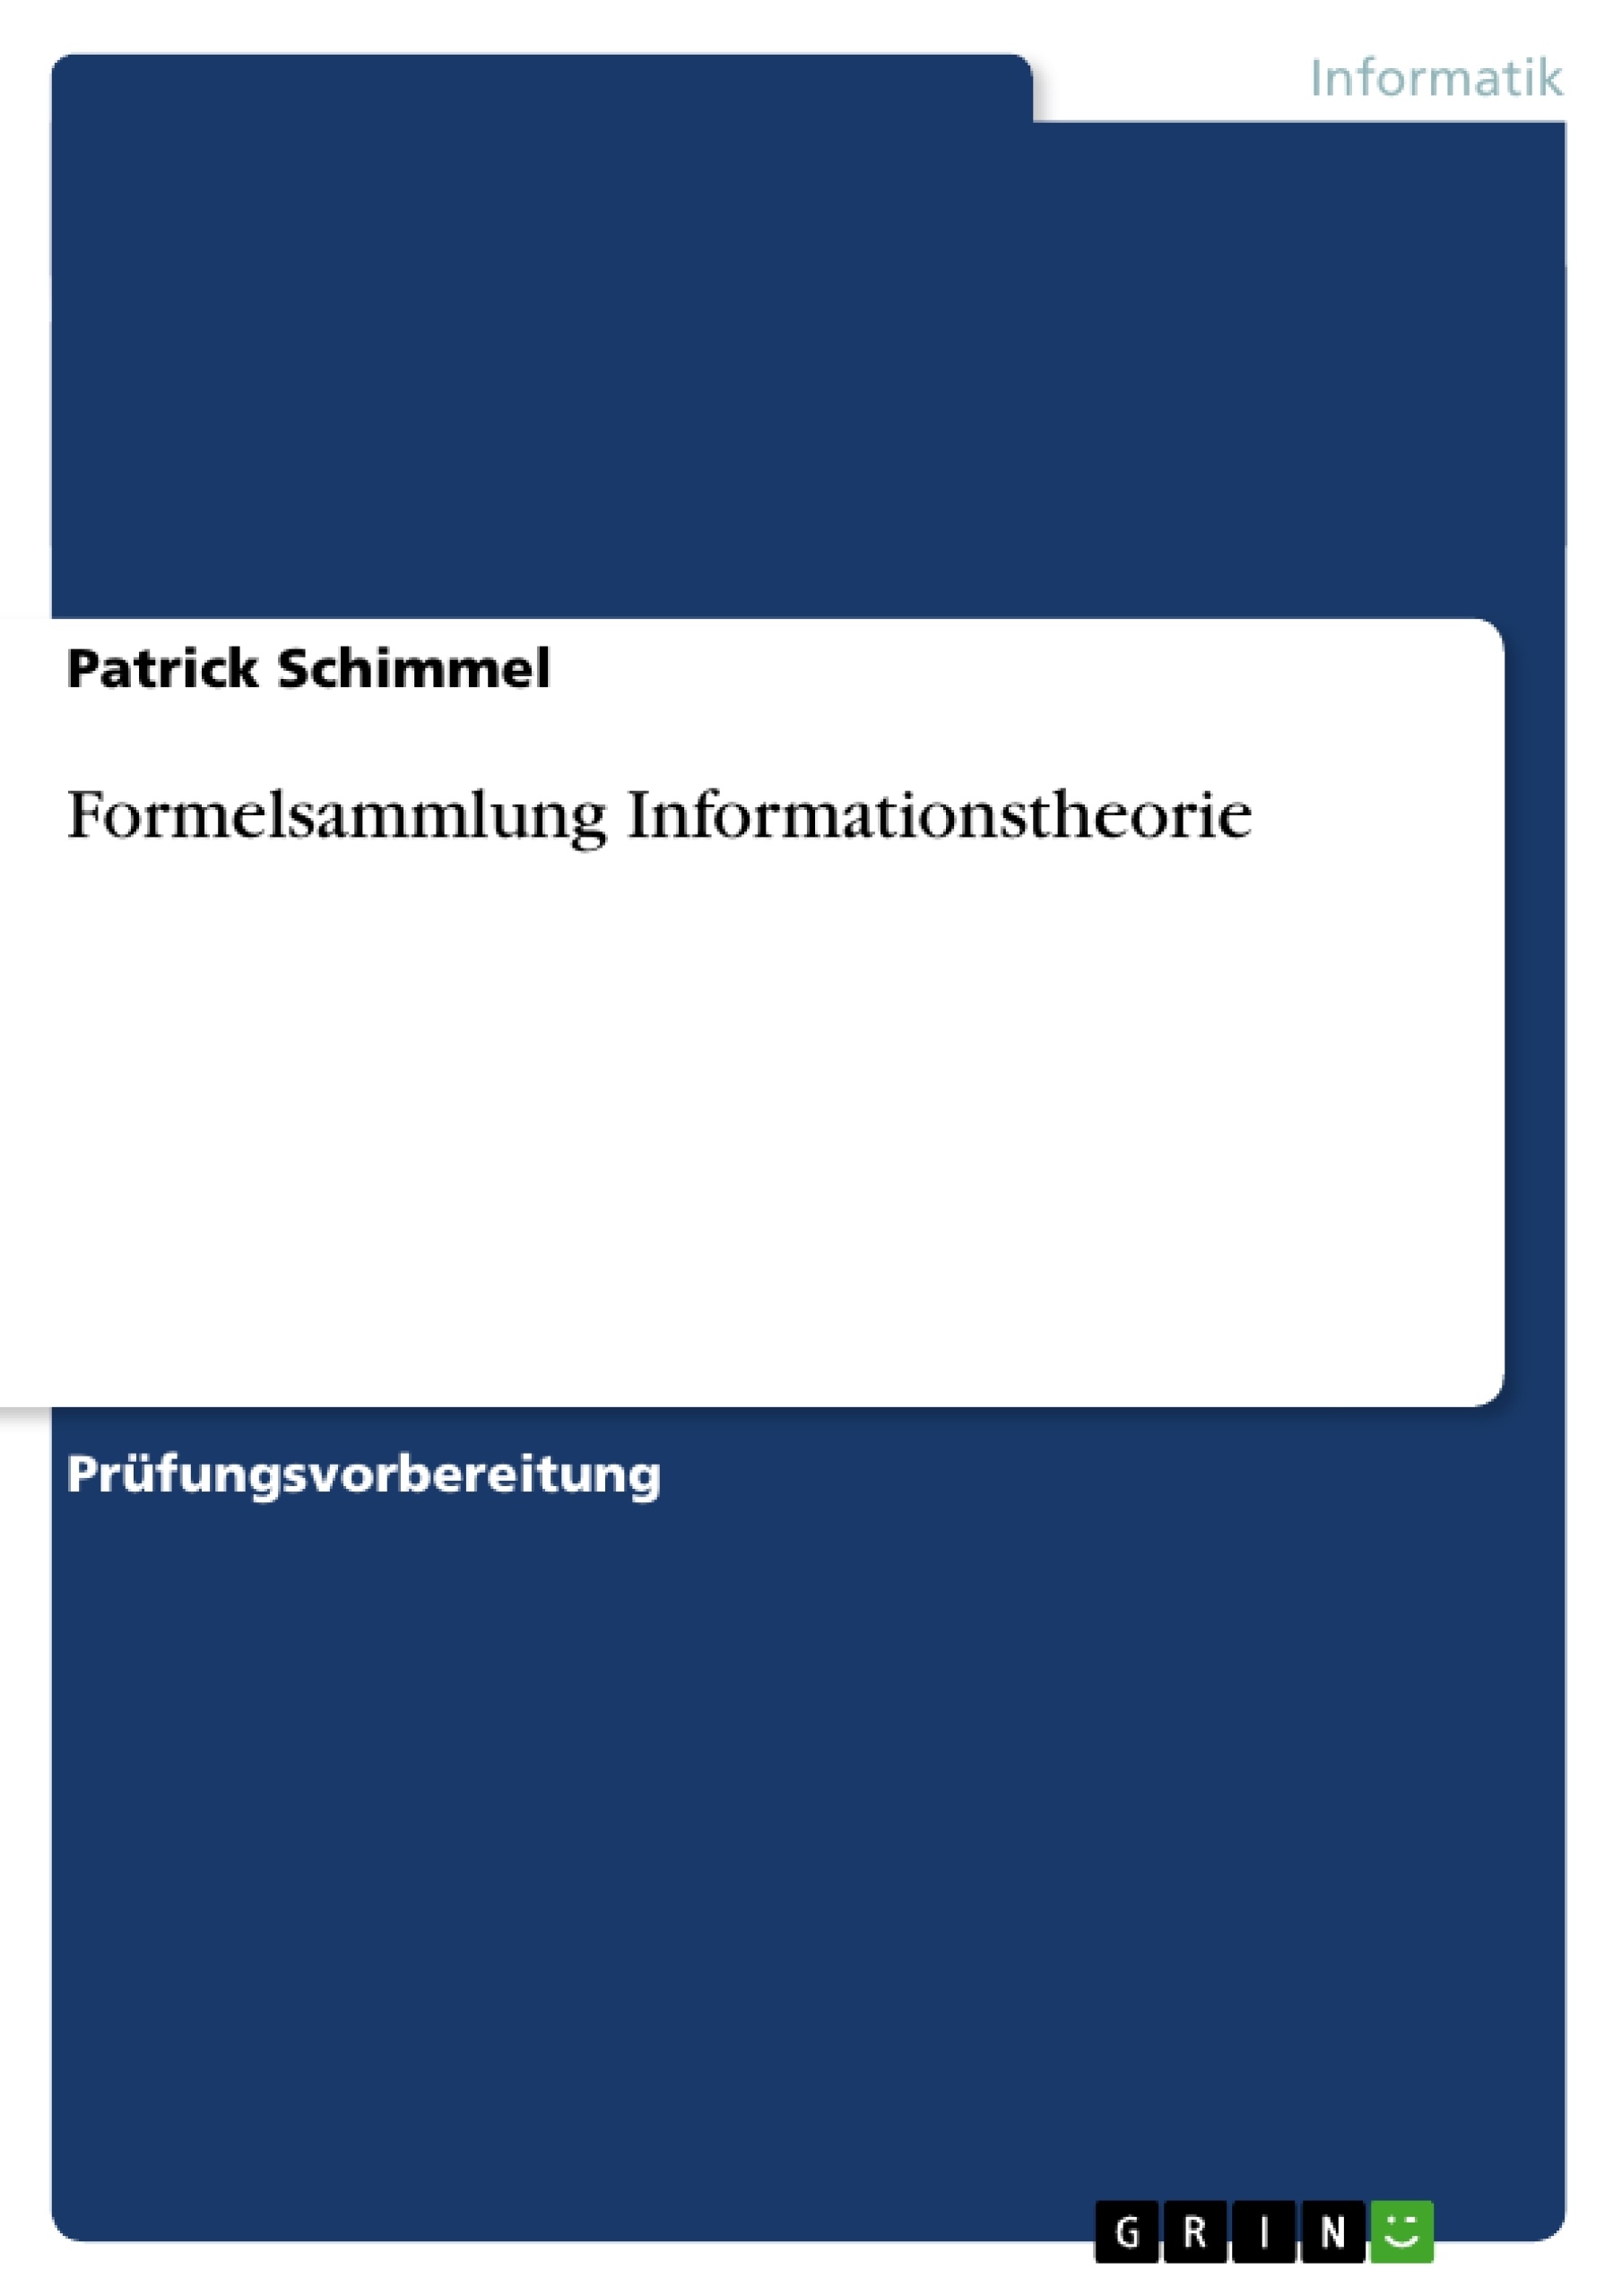 Title: Formelsammlung Informationstheorie